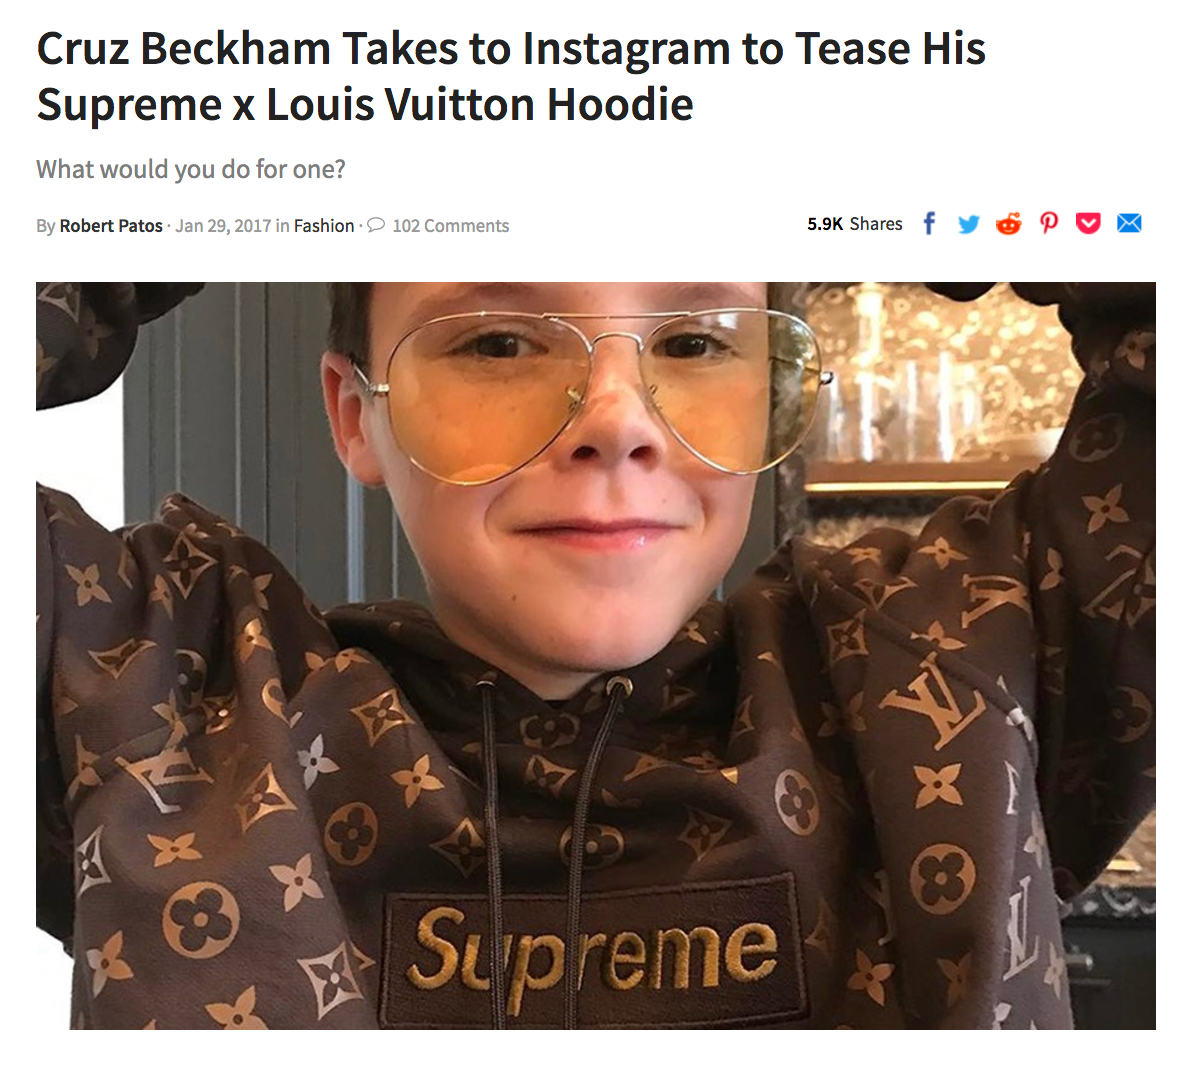 Cruz Beckham Wears a Never-Before-Seen Supreme x Louis Vuitton Hoodie